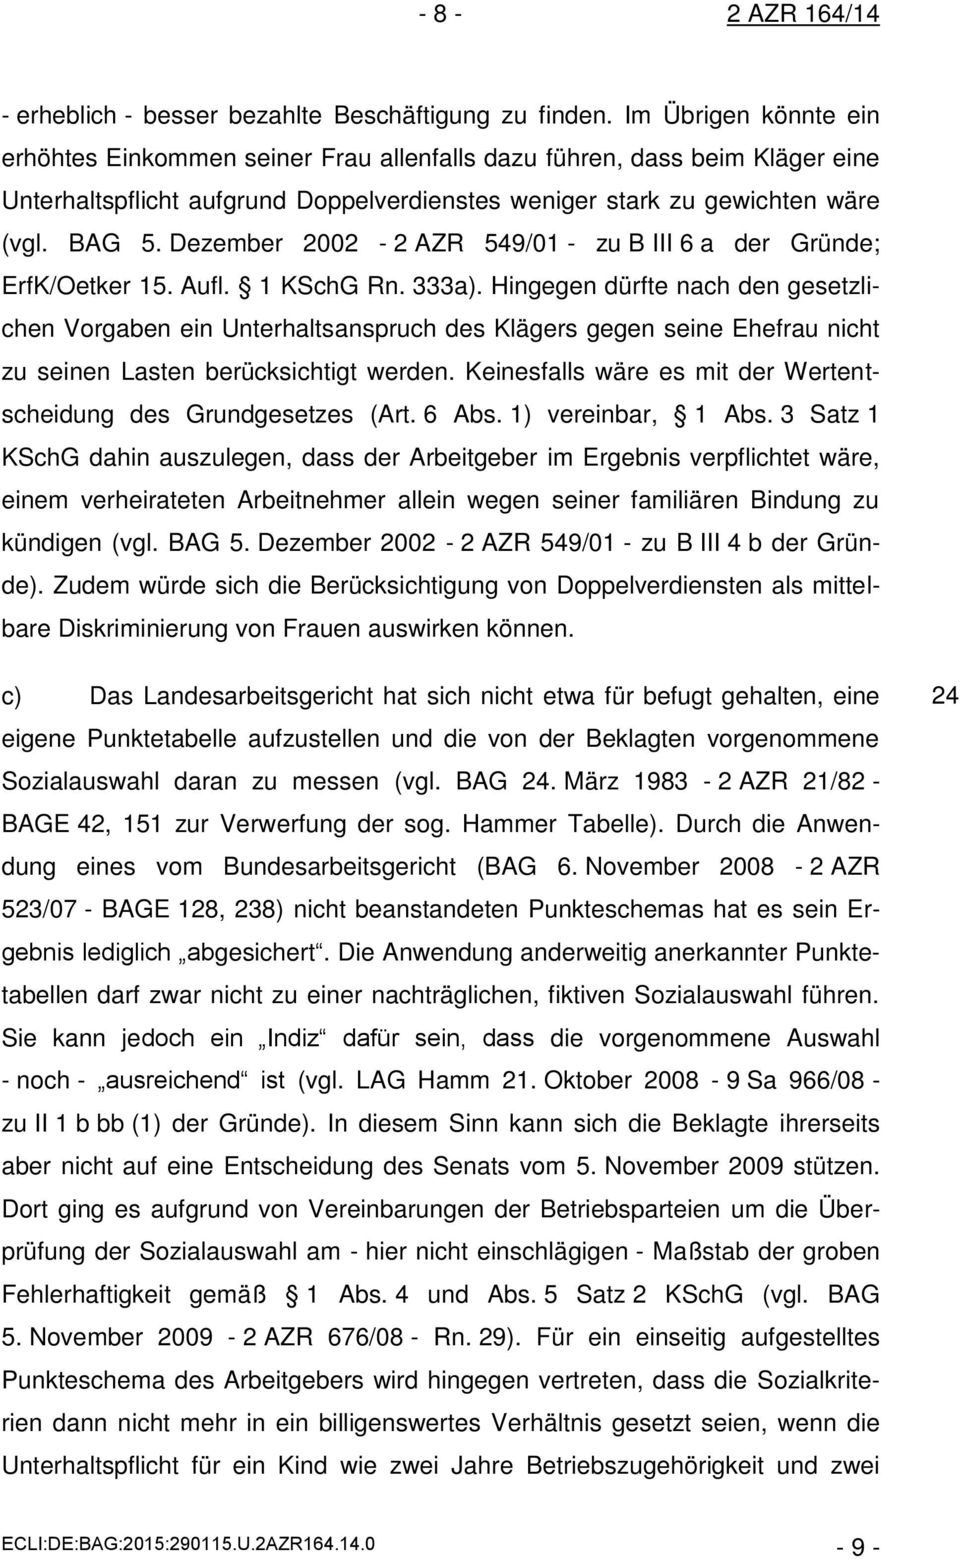 Dezember 2002-2 AZR 549/01 - zu B III 6 a der Gründe; ErfK/Oetker 15. Aufl. 1 KSchG Rn. 333a).